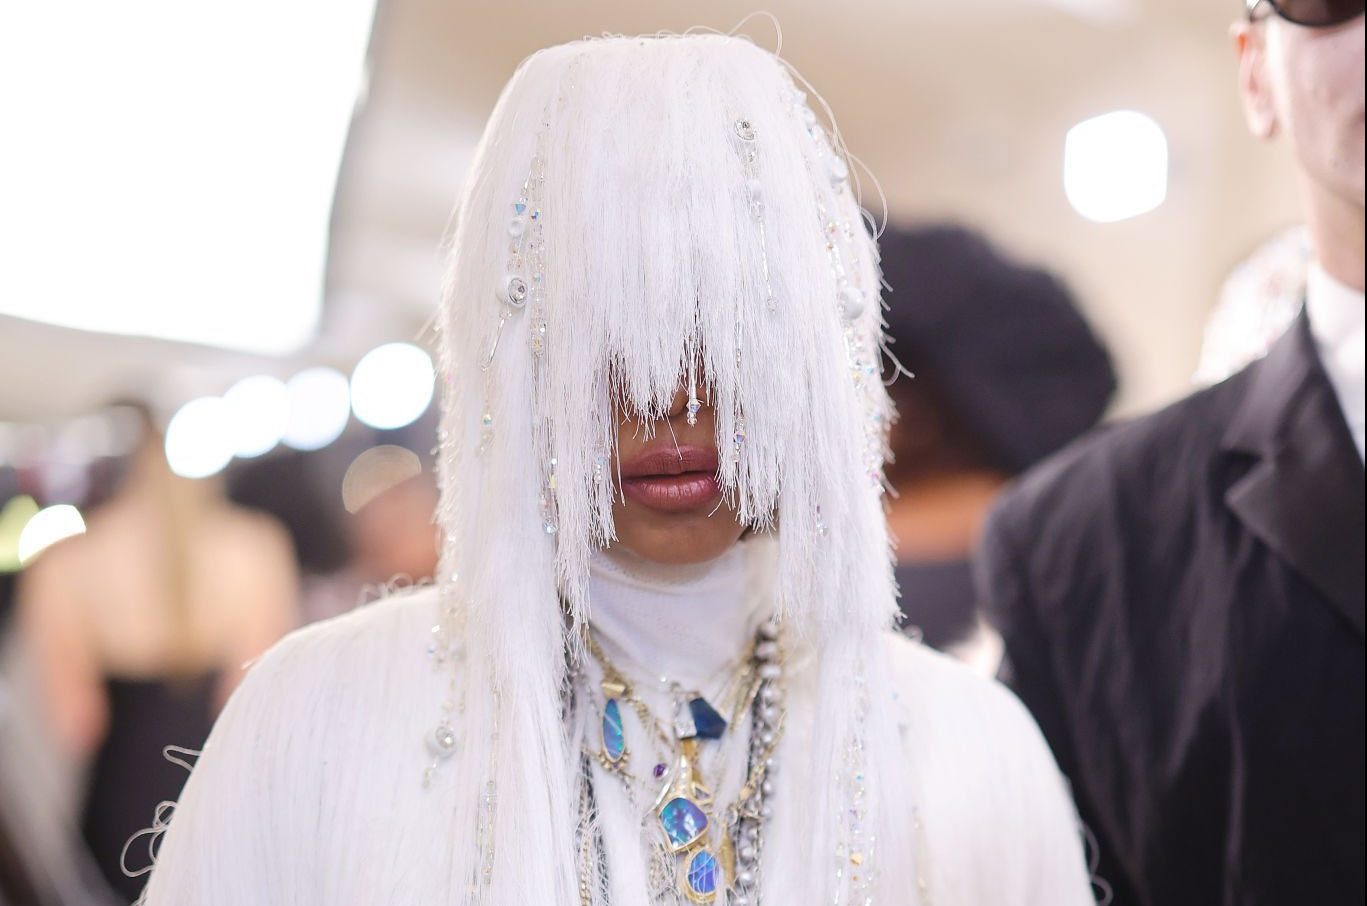 Erykah Badu’s Met Gala 2023 outfit trolled on social media: ‘Cosplaying as Sia’